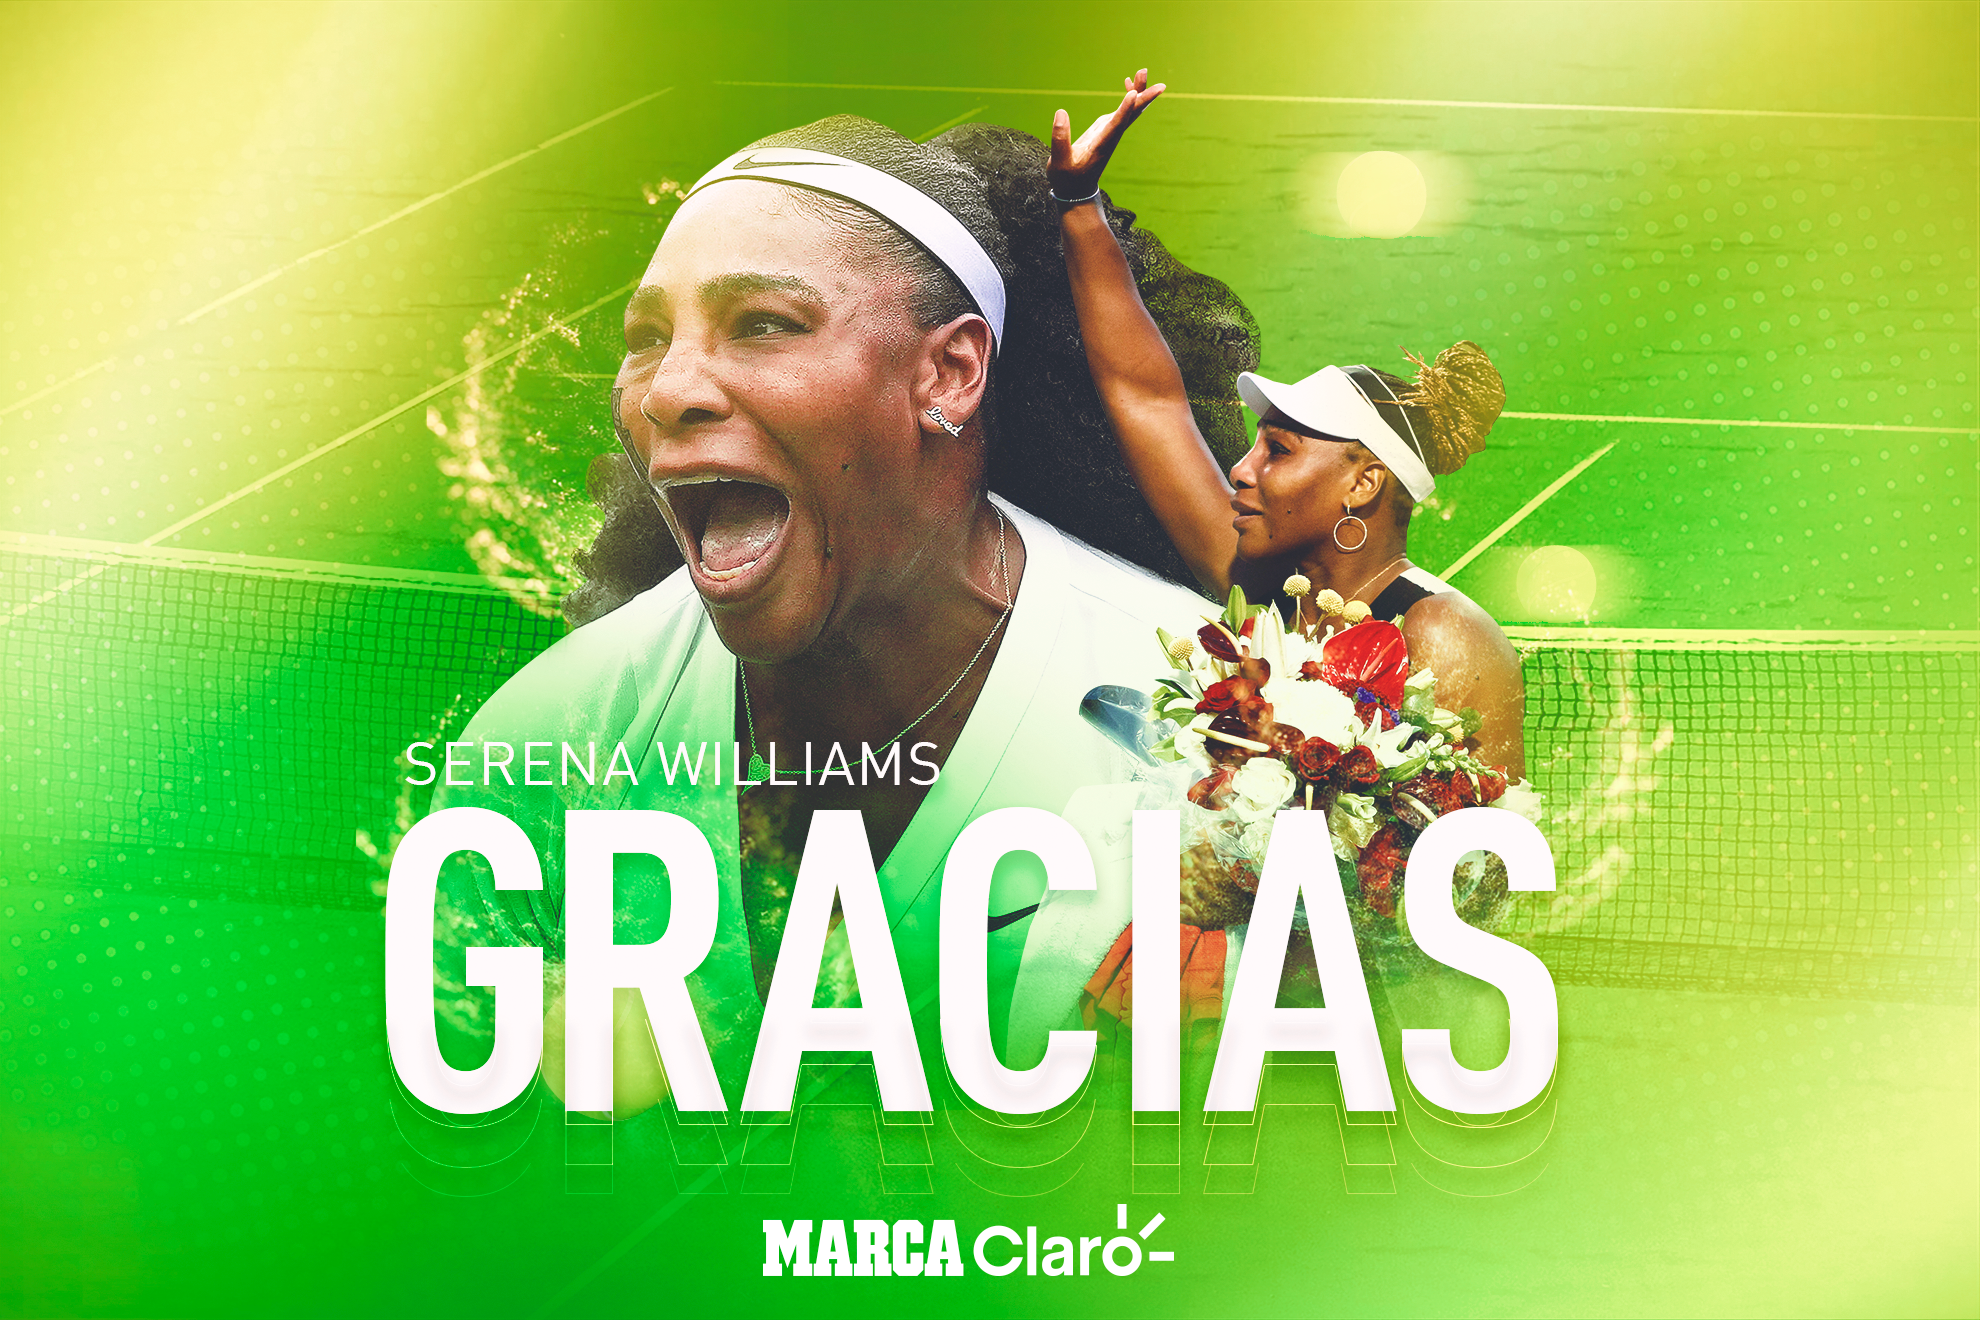 Serena Williams se retira oficialmente del tenis. MARCA Claro